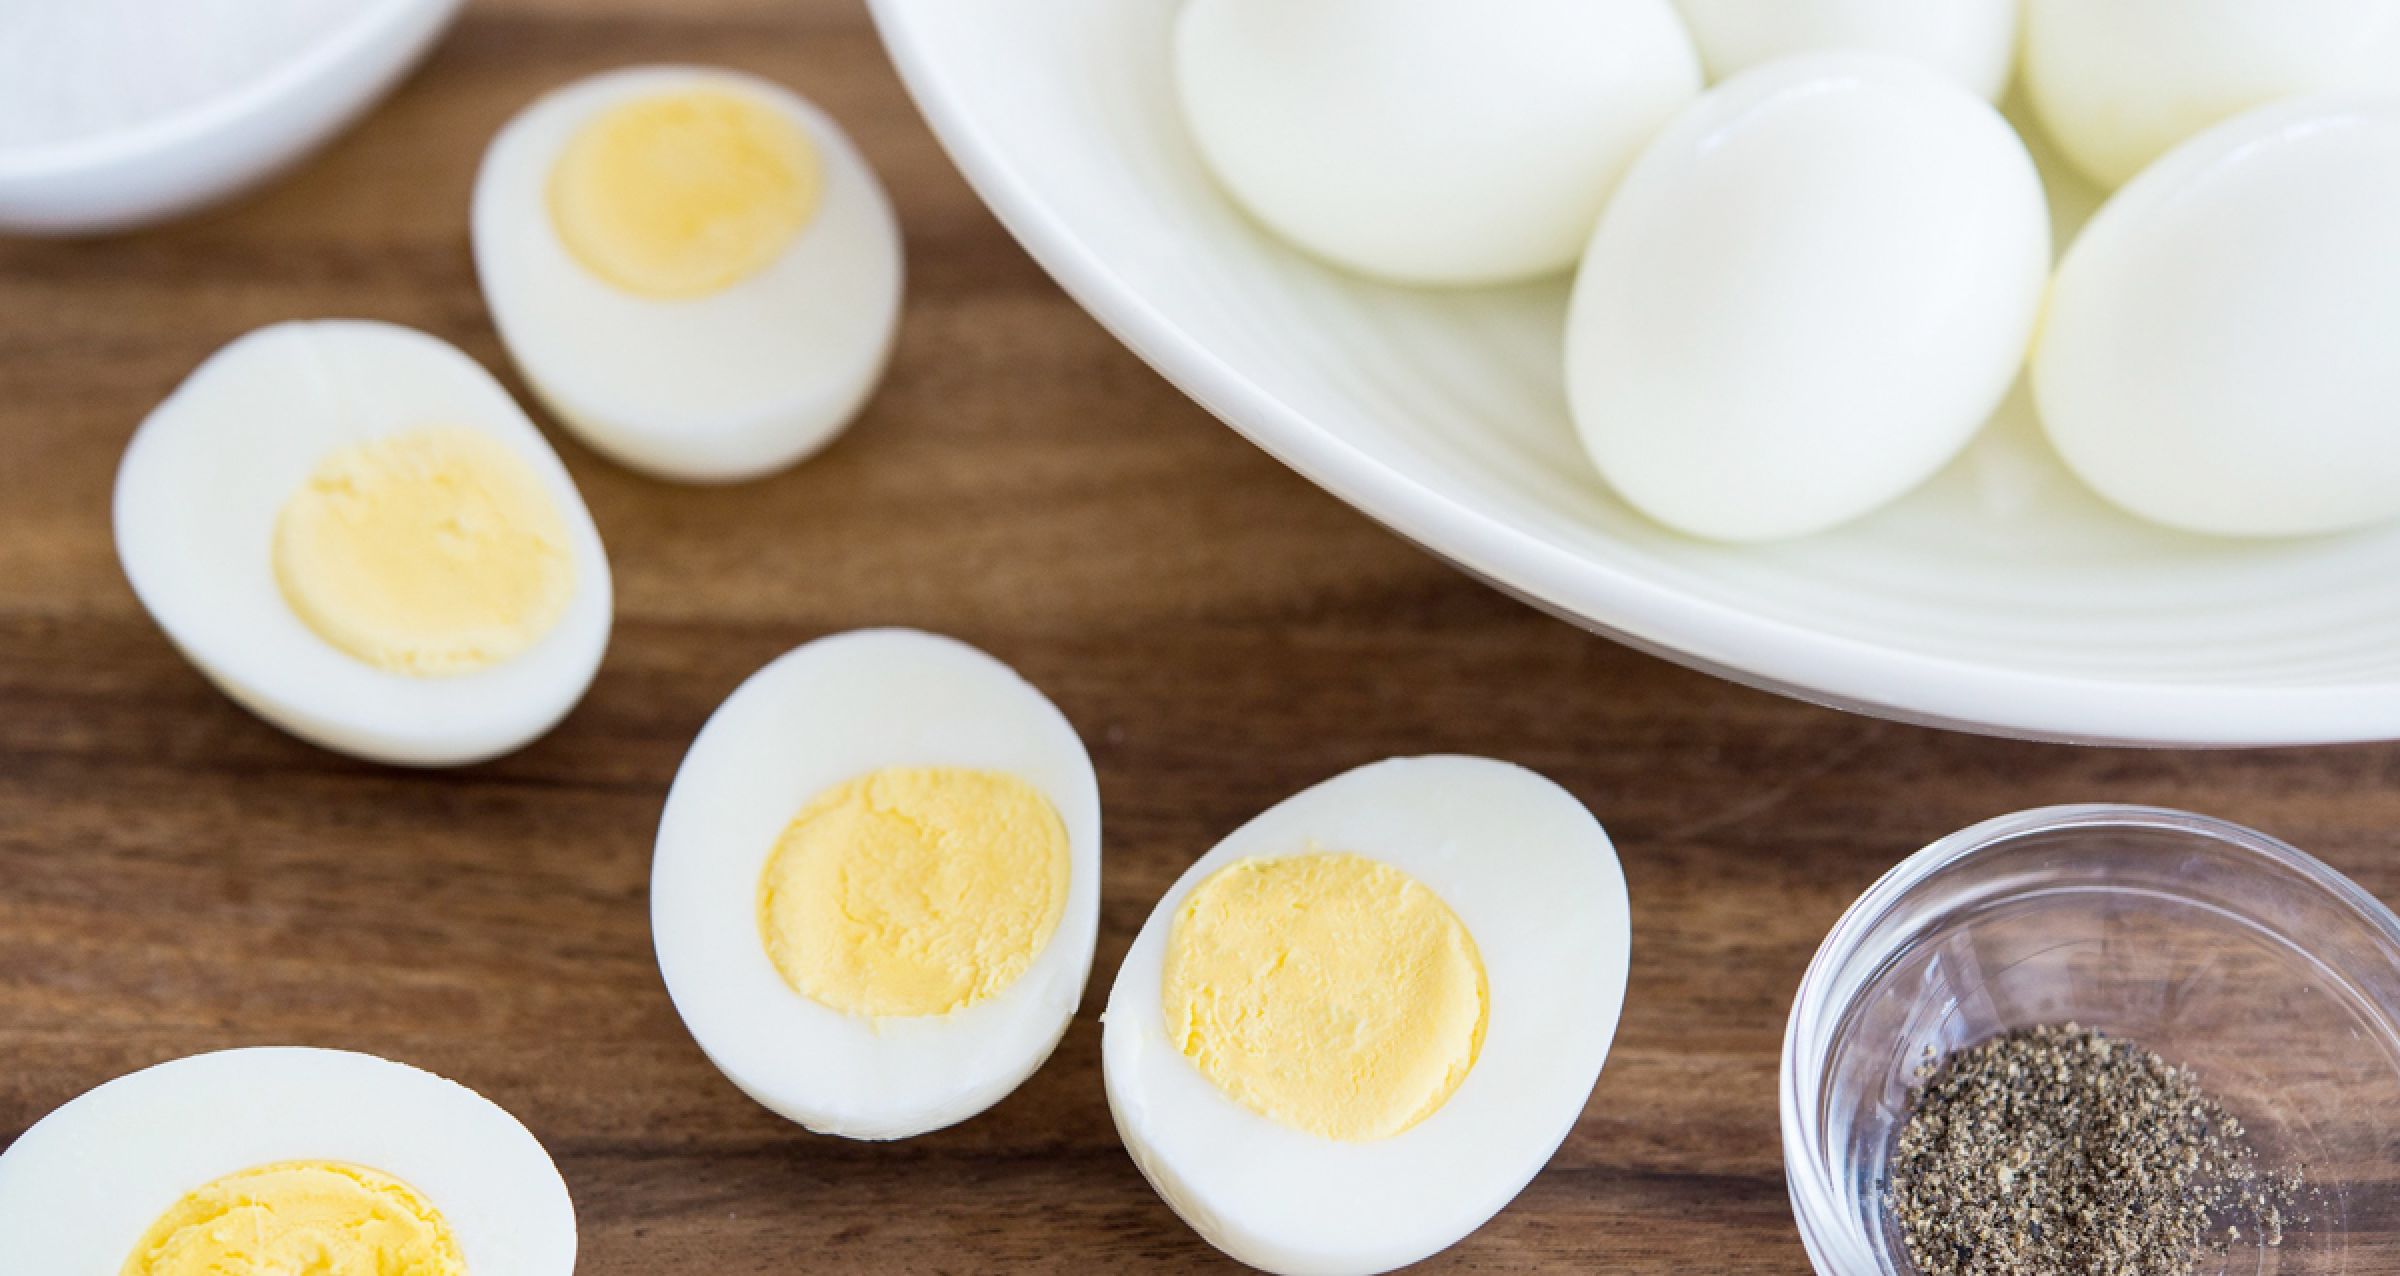 Сварить яйца в холодной воде. Яйца всмятку и вкрутую. Что приготовить с яйцами. Приготовление яйца вкрутую. Яйцо вареное вкрутую.